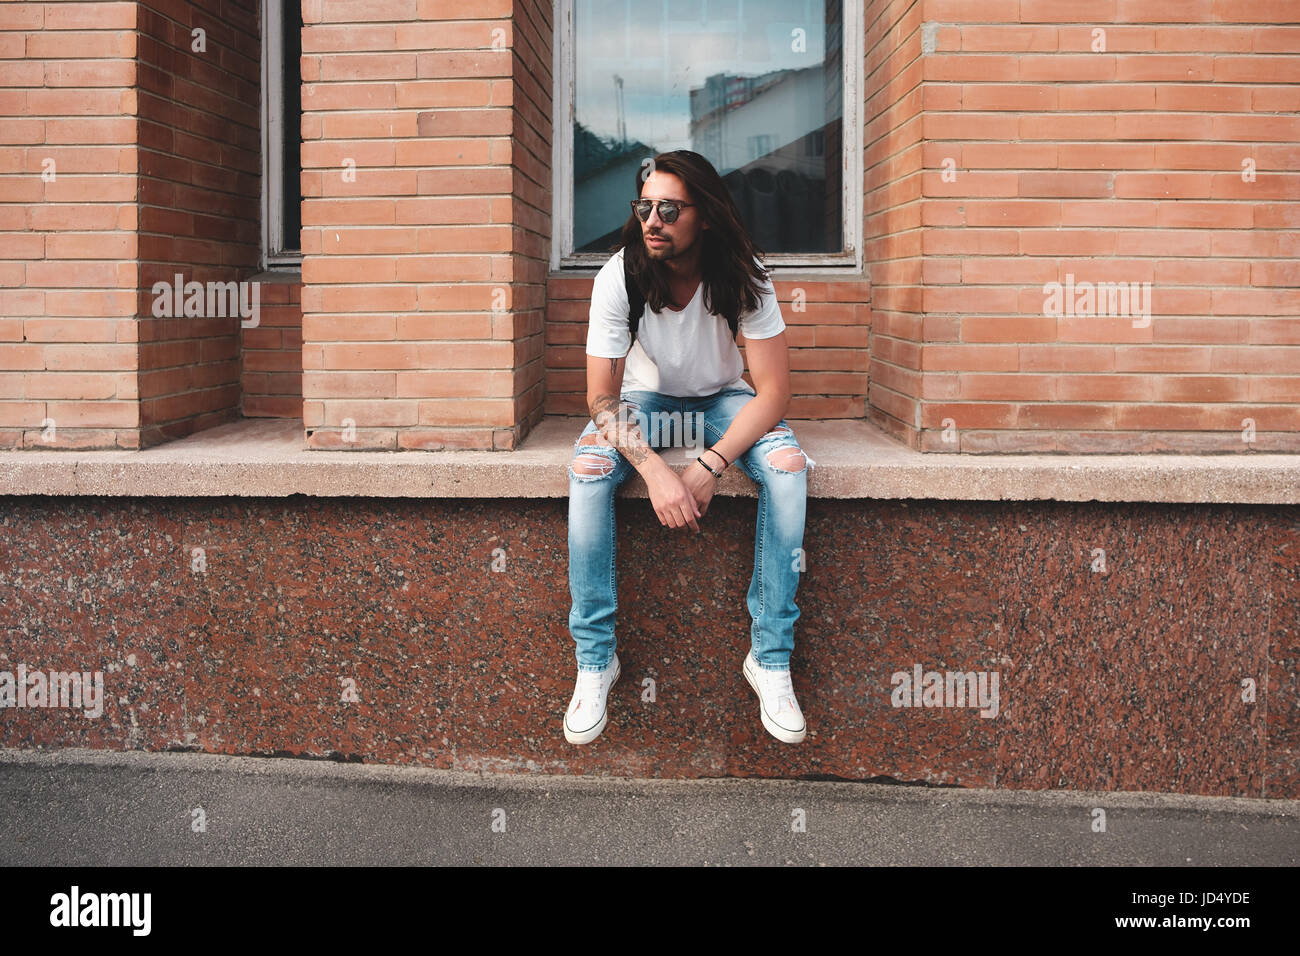 Stilvolle Hipster-Modell mit langen Haaren Lebensstil auf der Straße. Gekleidet in ein weißes T-shirt und zerrissene Bluejeans in der Stadt Stockfoto